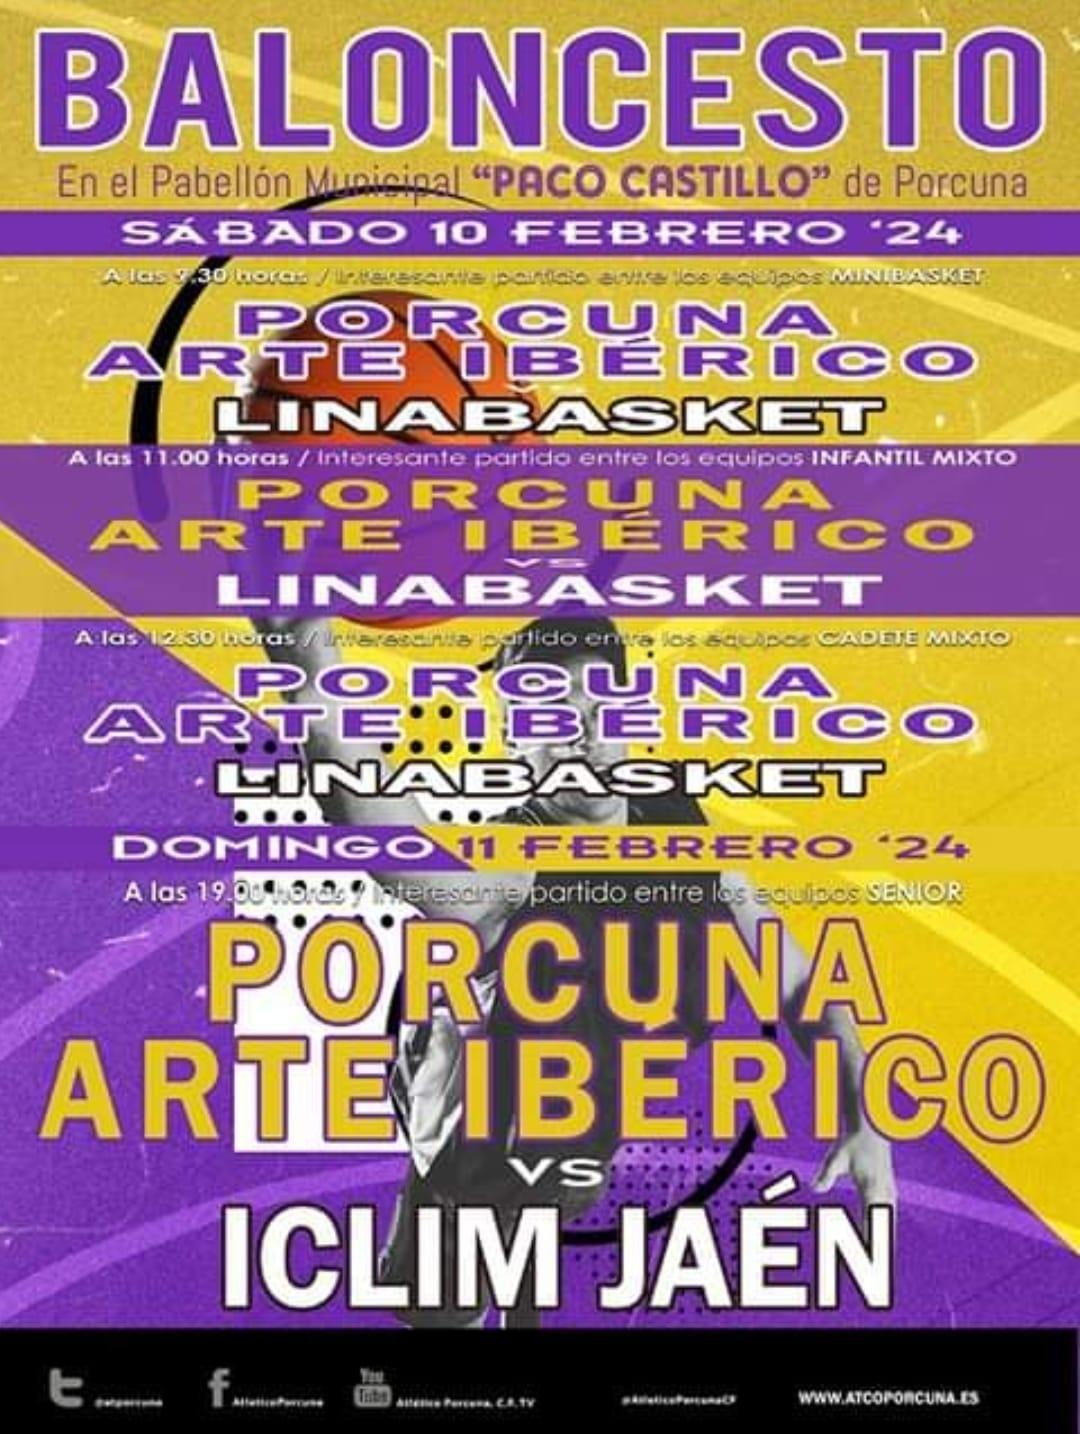 Baloncesto: CB Porcuna Arte Ibérico - ICLIM Jaén